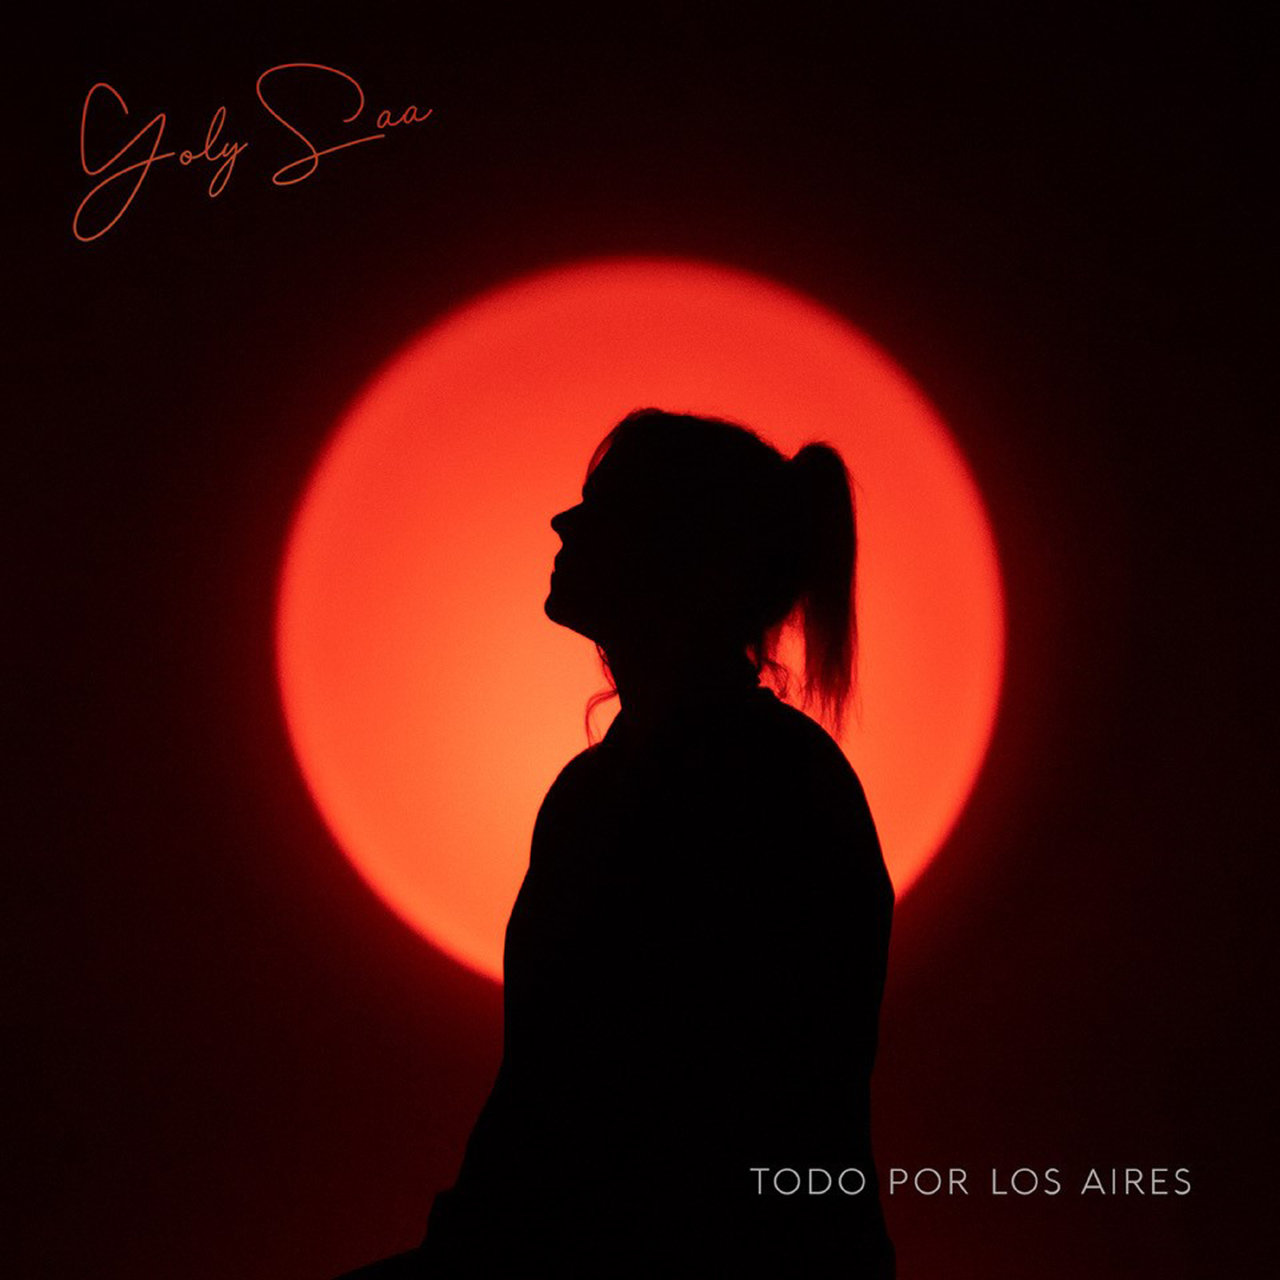 Yoly Saa — Todo por los aires cover artwork